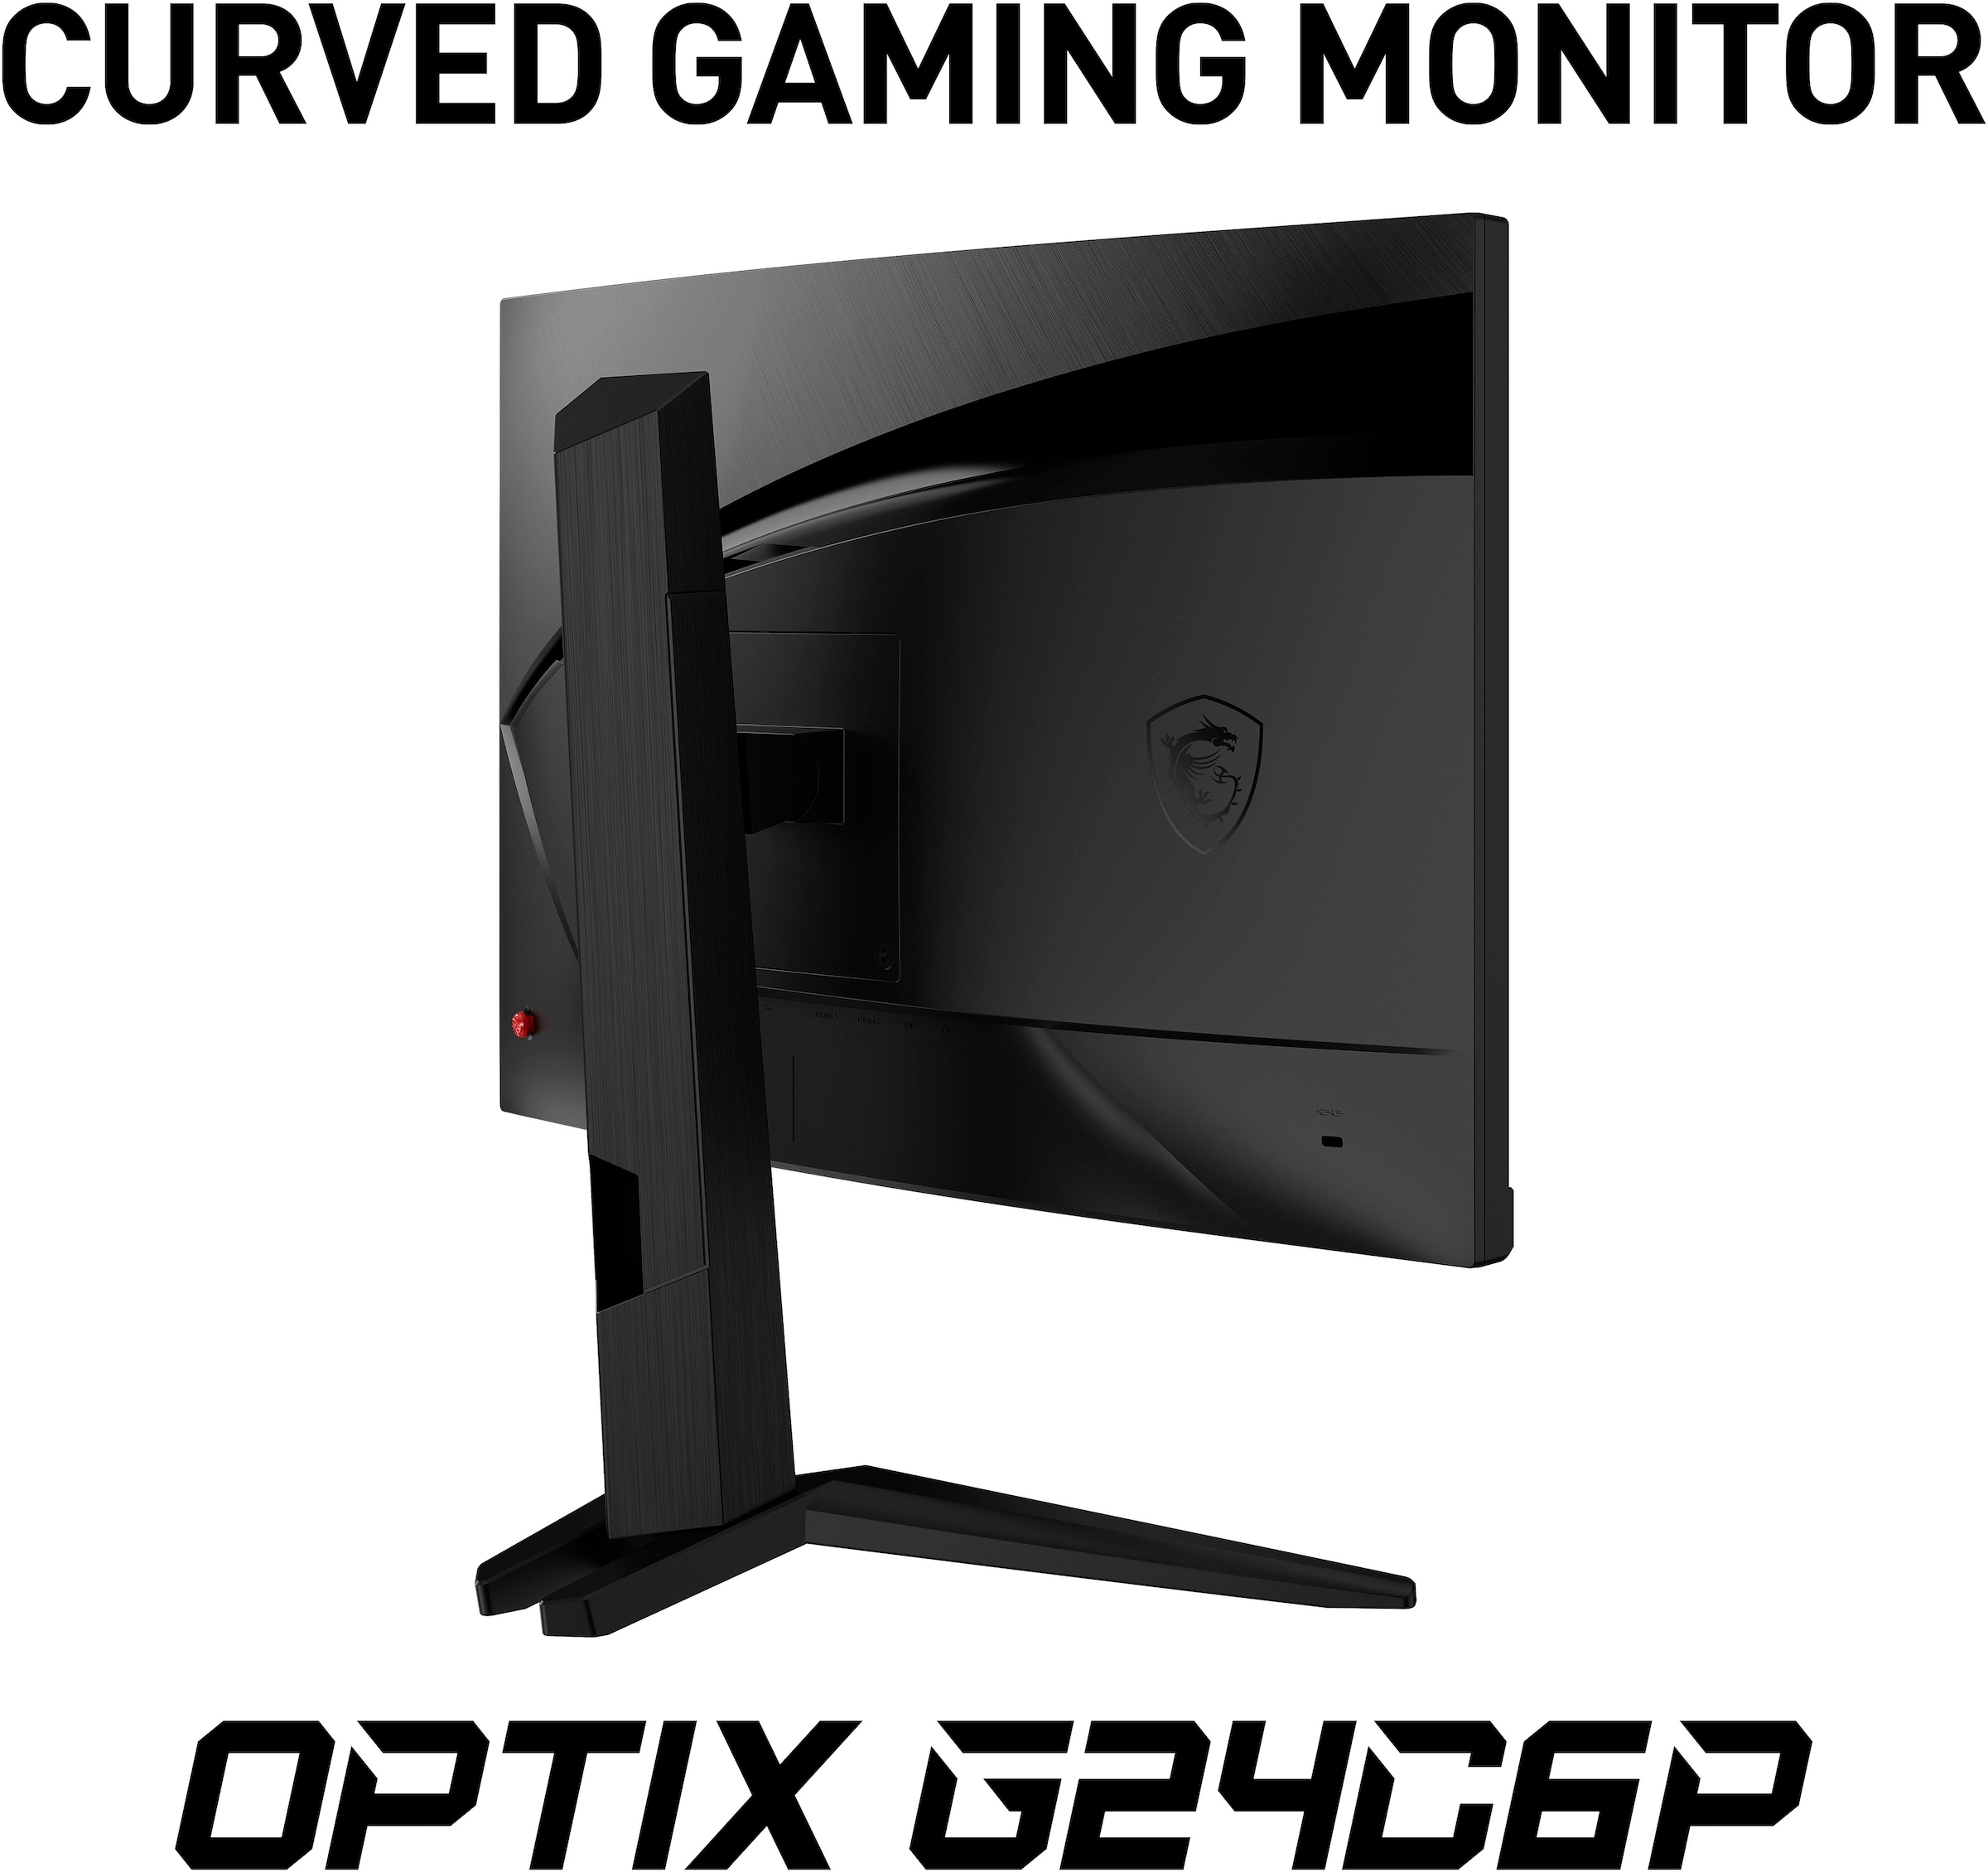 MSI Curved-Gaming-LED-Monitor »Optix G24C6P«, 60 cm/24 Zoll, 1920 x 1080 px, Full HD, 1 ms Reaktionszeit, 144 Hz, höhenverstellbar, 3 Jahre Herstellergarantie